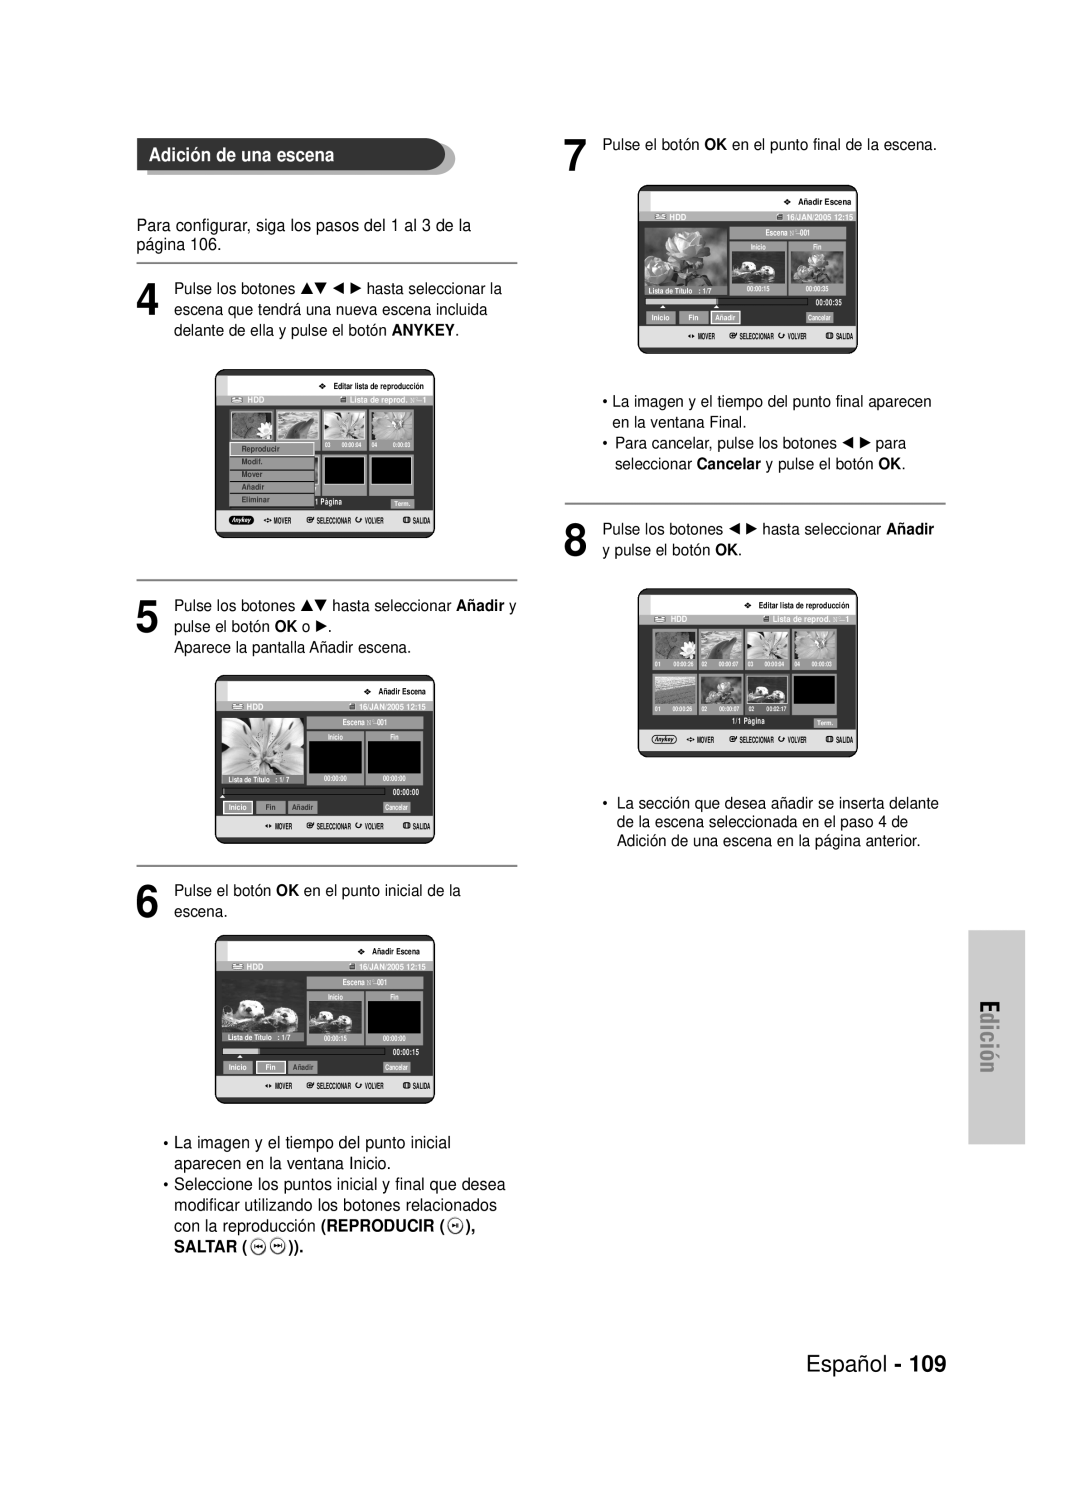 Samsung DVD-HR725/XEF Adición de una escena, Edición, Español, Para configurar, siga los pasos del 1 al 3 de la página 